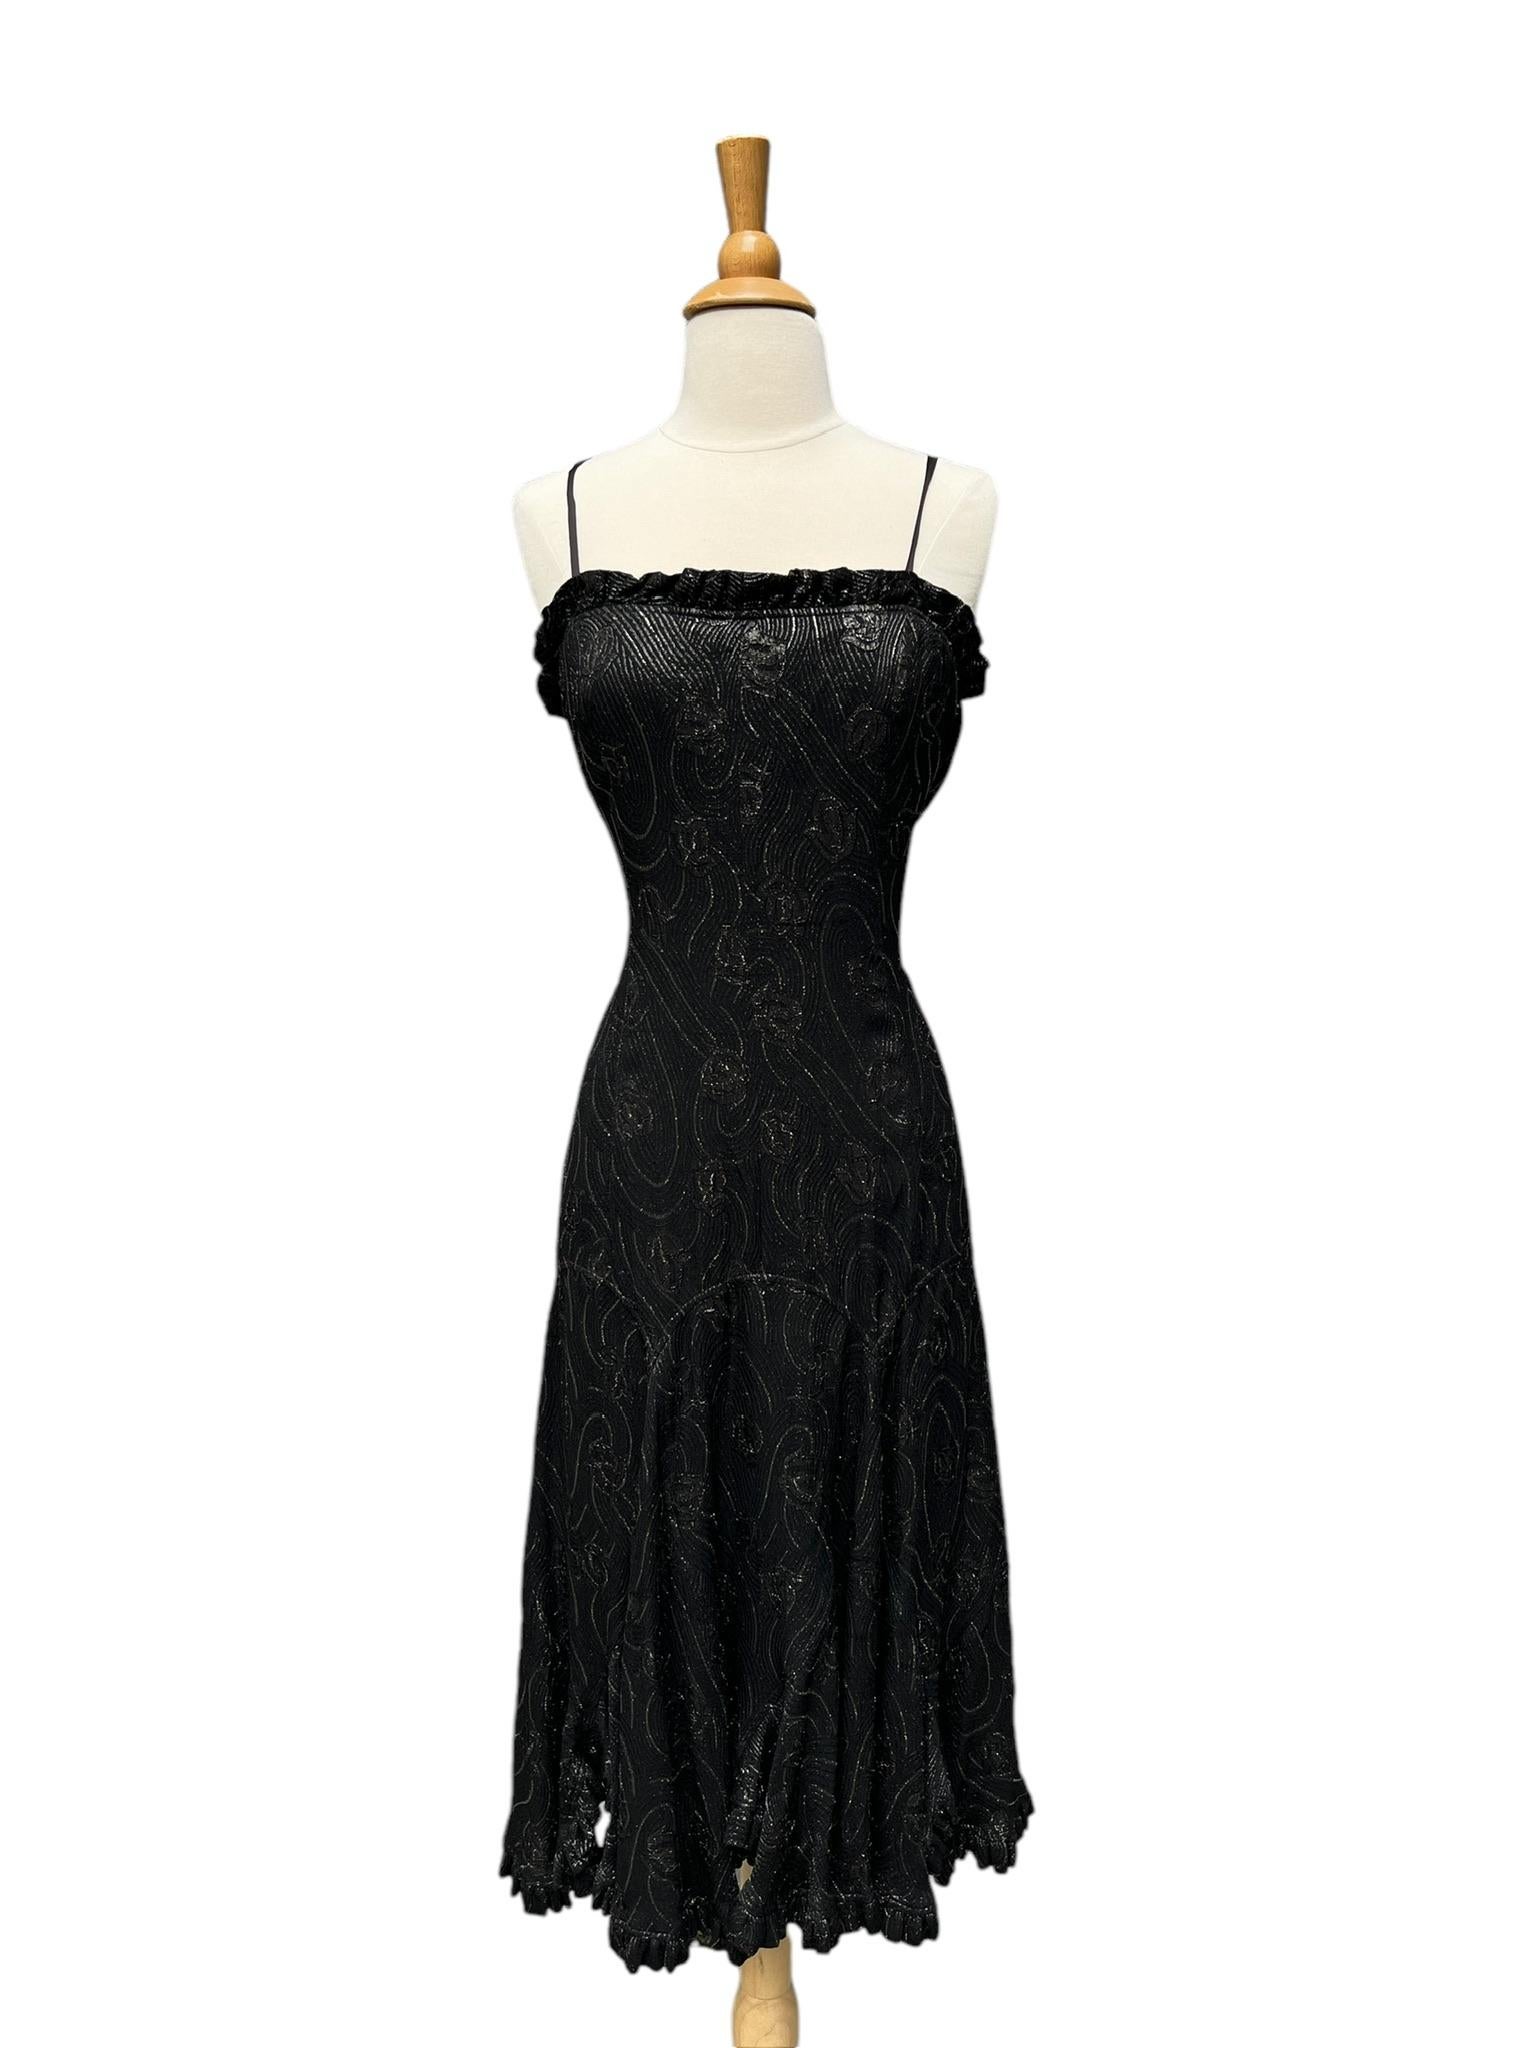 Vintage Jean Varon Metallic-Kleid.

Dieses Kleid ist eine schöne dunkle Rosine oder Lakritze (bräunlich schwarz) mit bronzefarbenem Lurexfaden durchzogen. Wirbel und florales Muster. Gerade Silhouette mit voluminösem Rüschensaum. Das Mieder hat